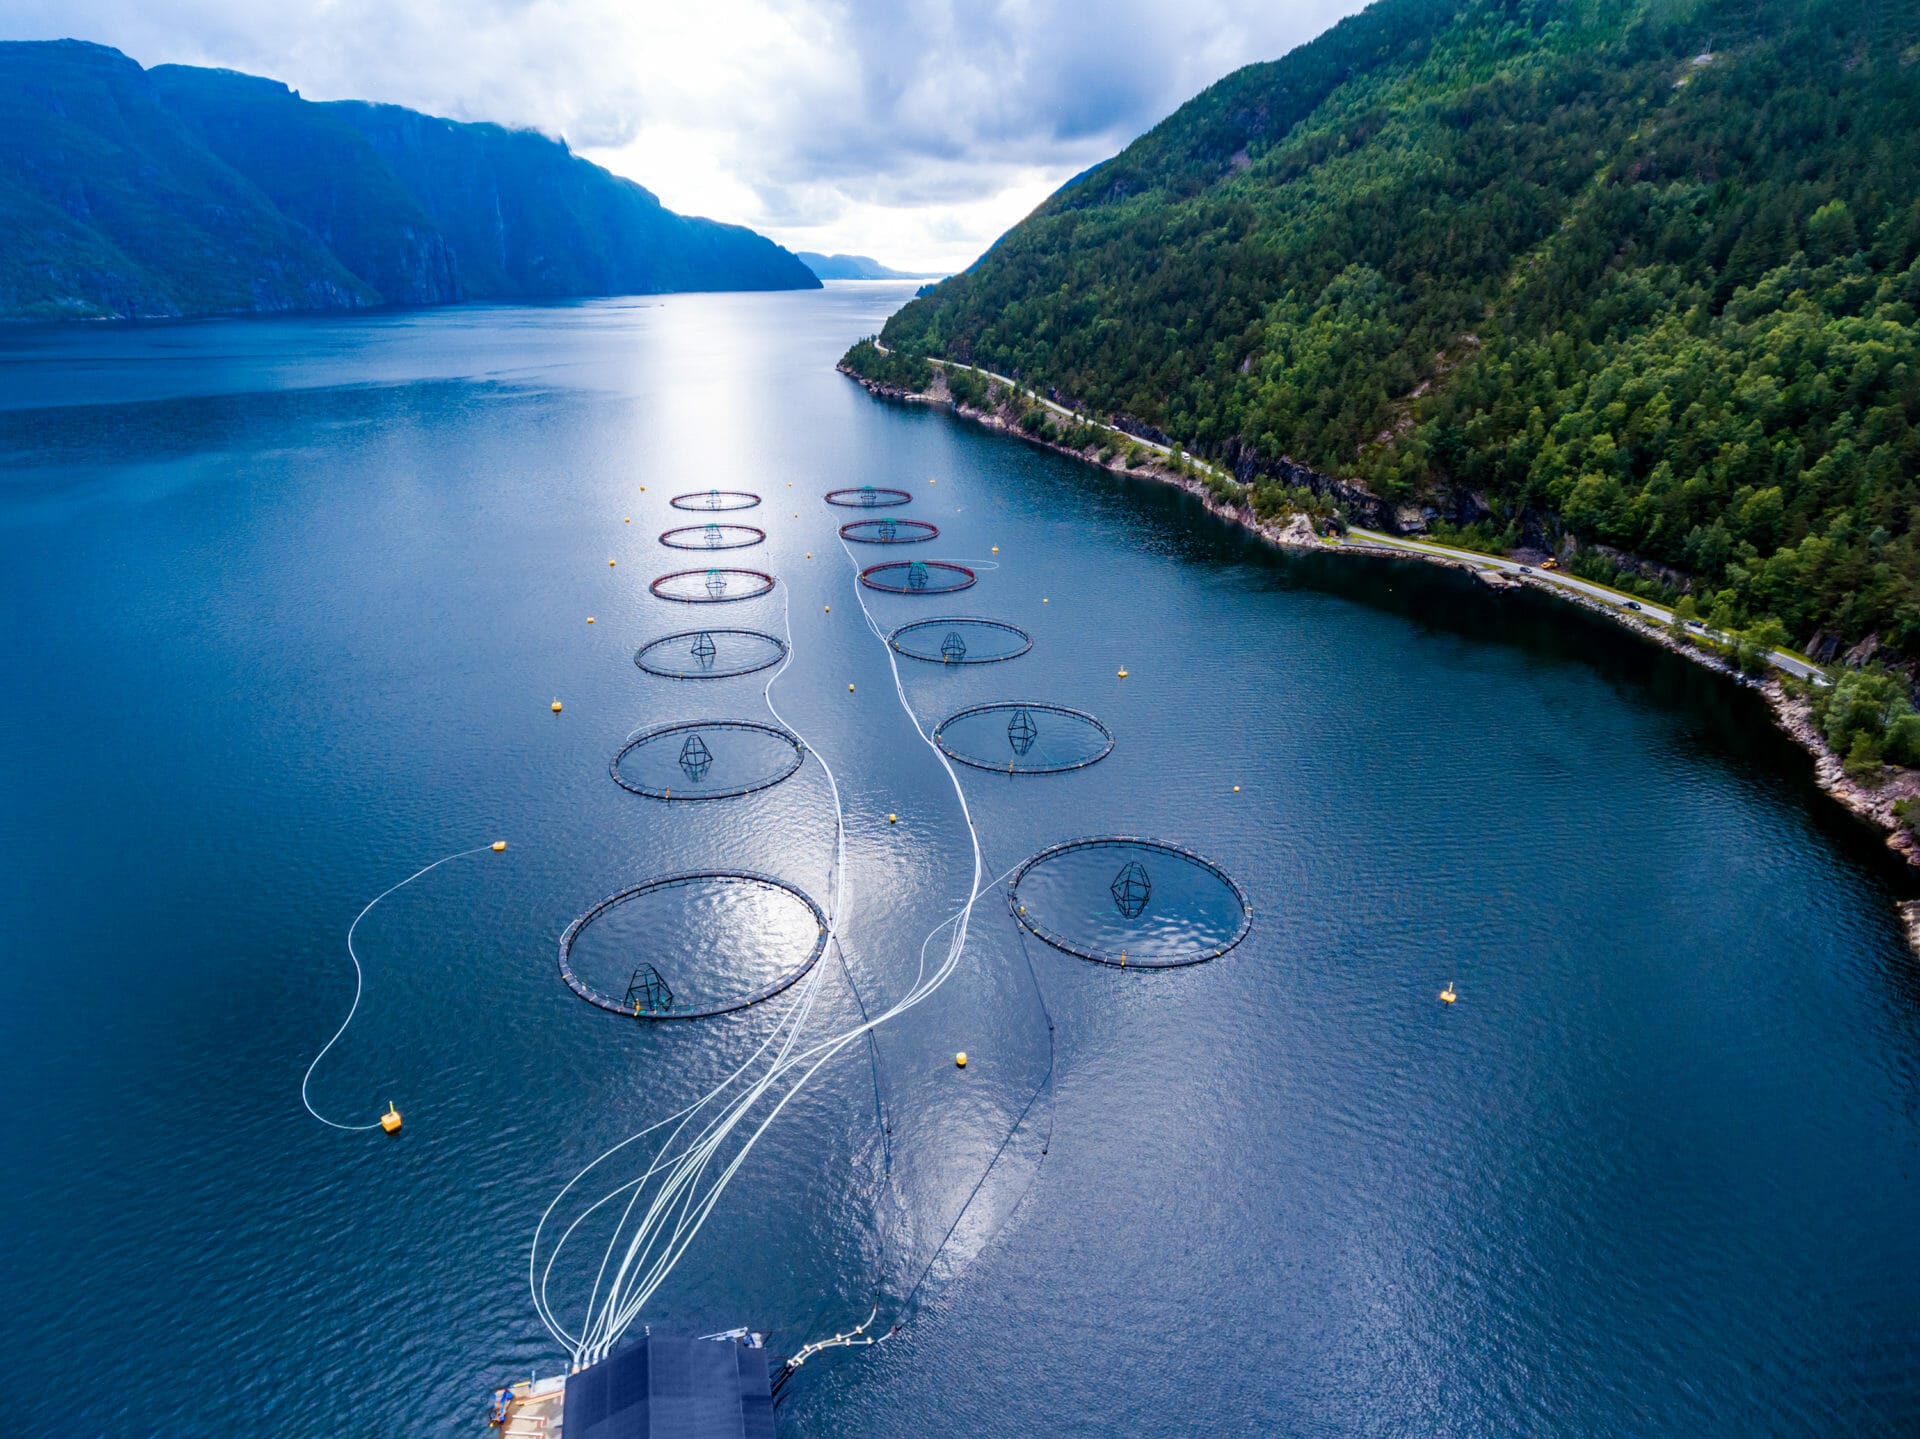 Bilde av en fjordarm i Norge der det er installert flere fiske merder for oppdrett av laks.